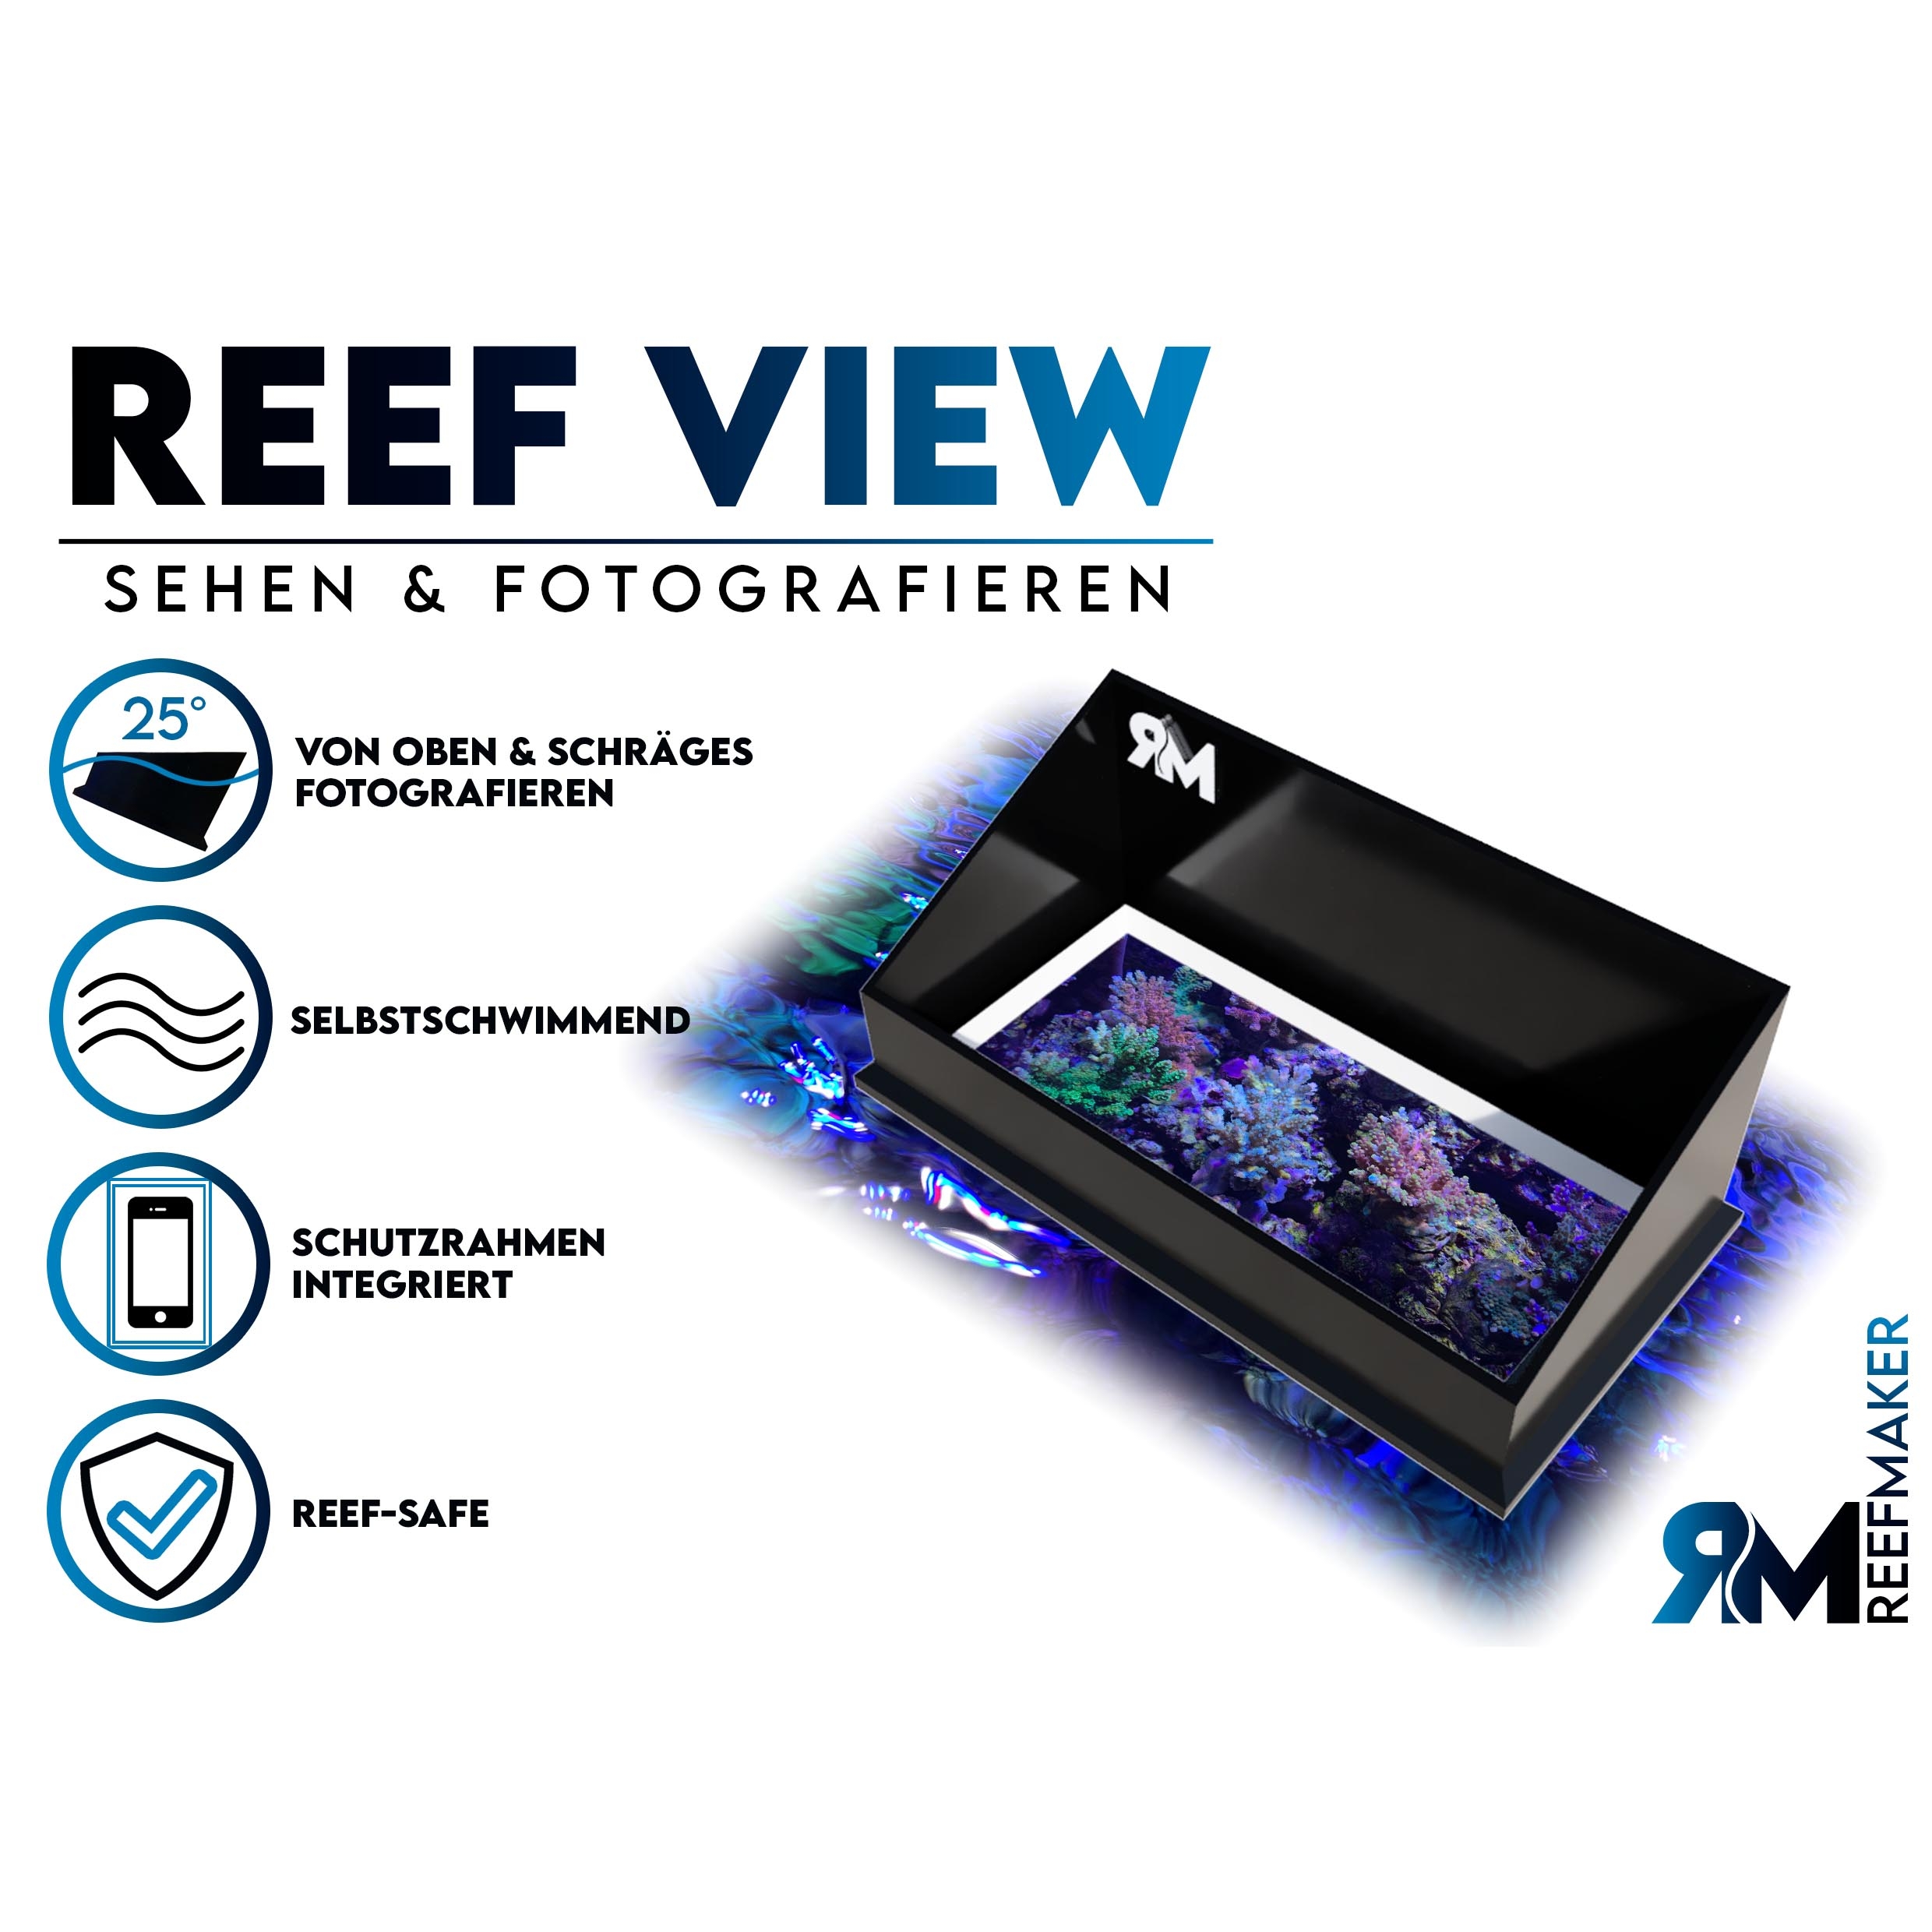 ReefMaker - Reef View